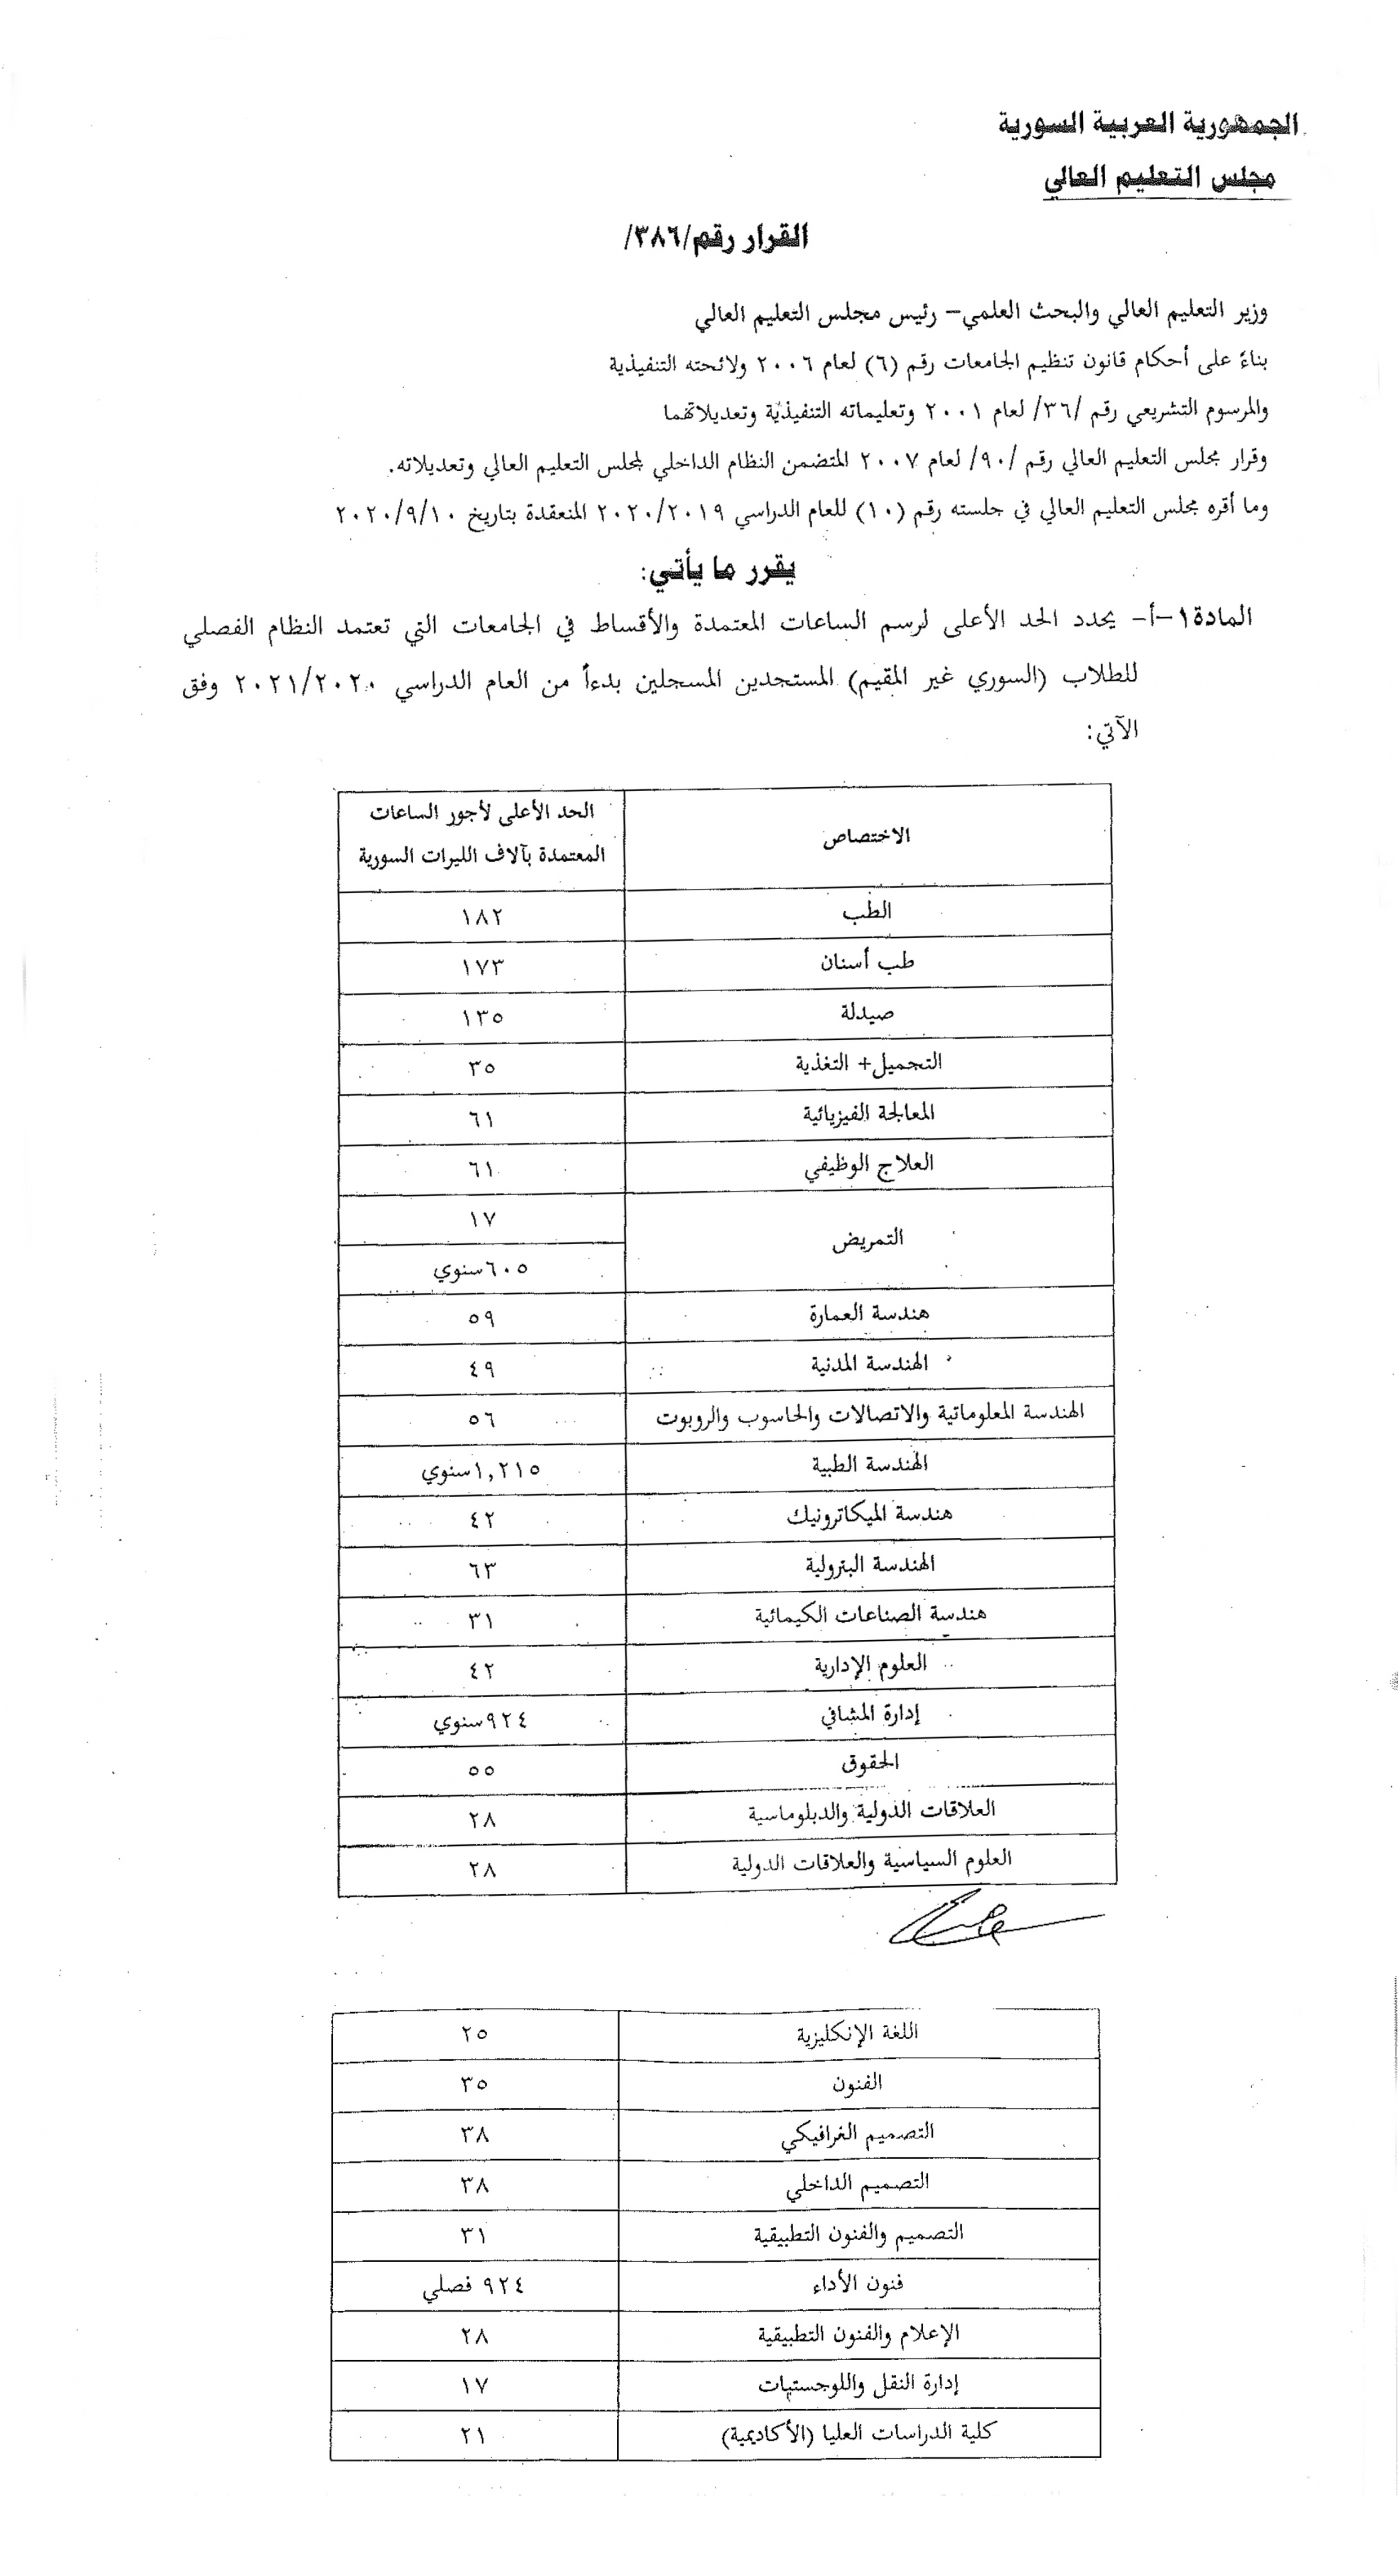 إعلان أسماء المقبولين في مفاضلة جامعة القلمون من الشهادات غير السورية للعام 2020 2021 جامعة القلمون الخاصة